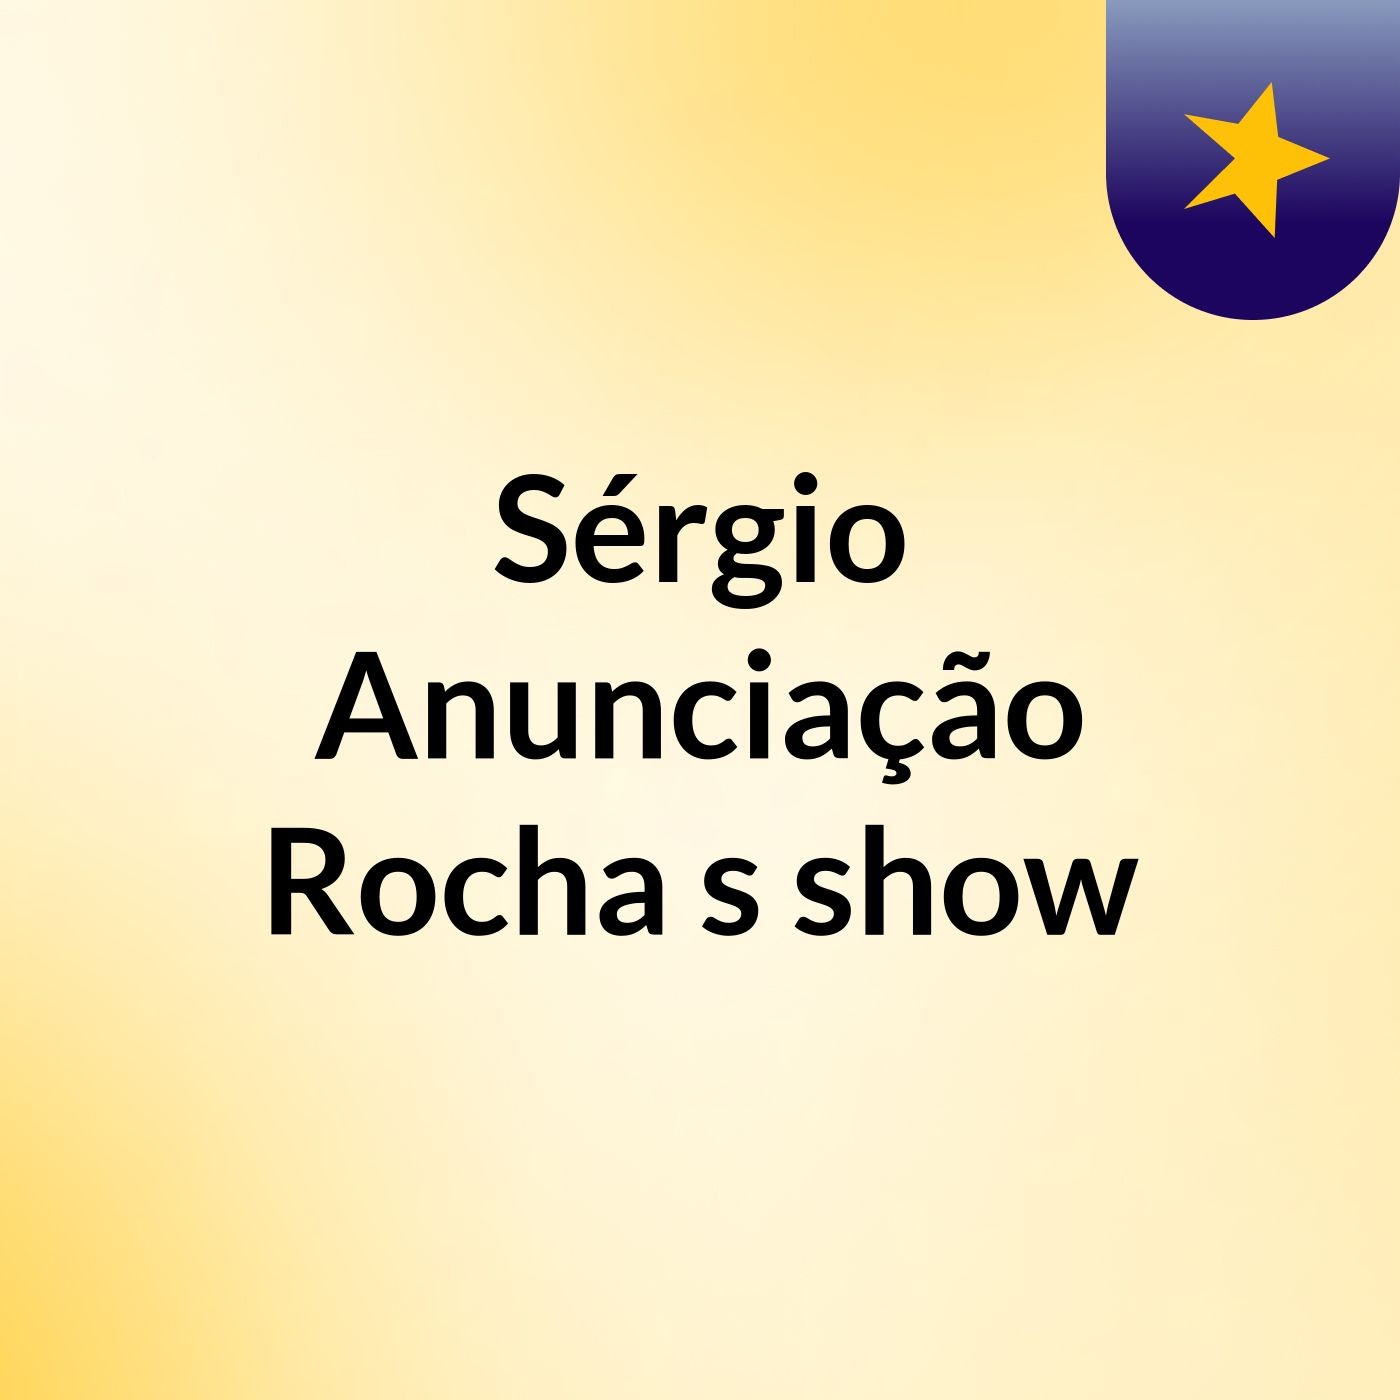 Sérgio Anunciação Rocha's show